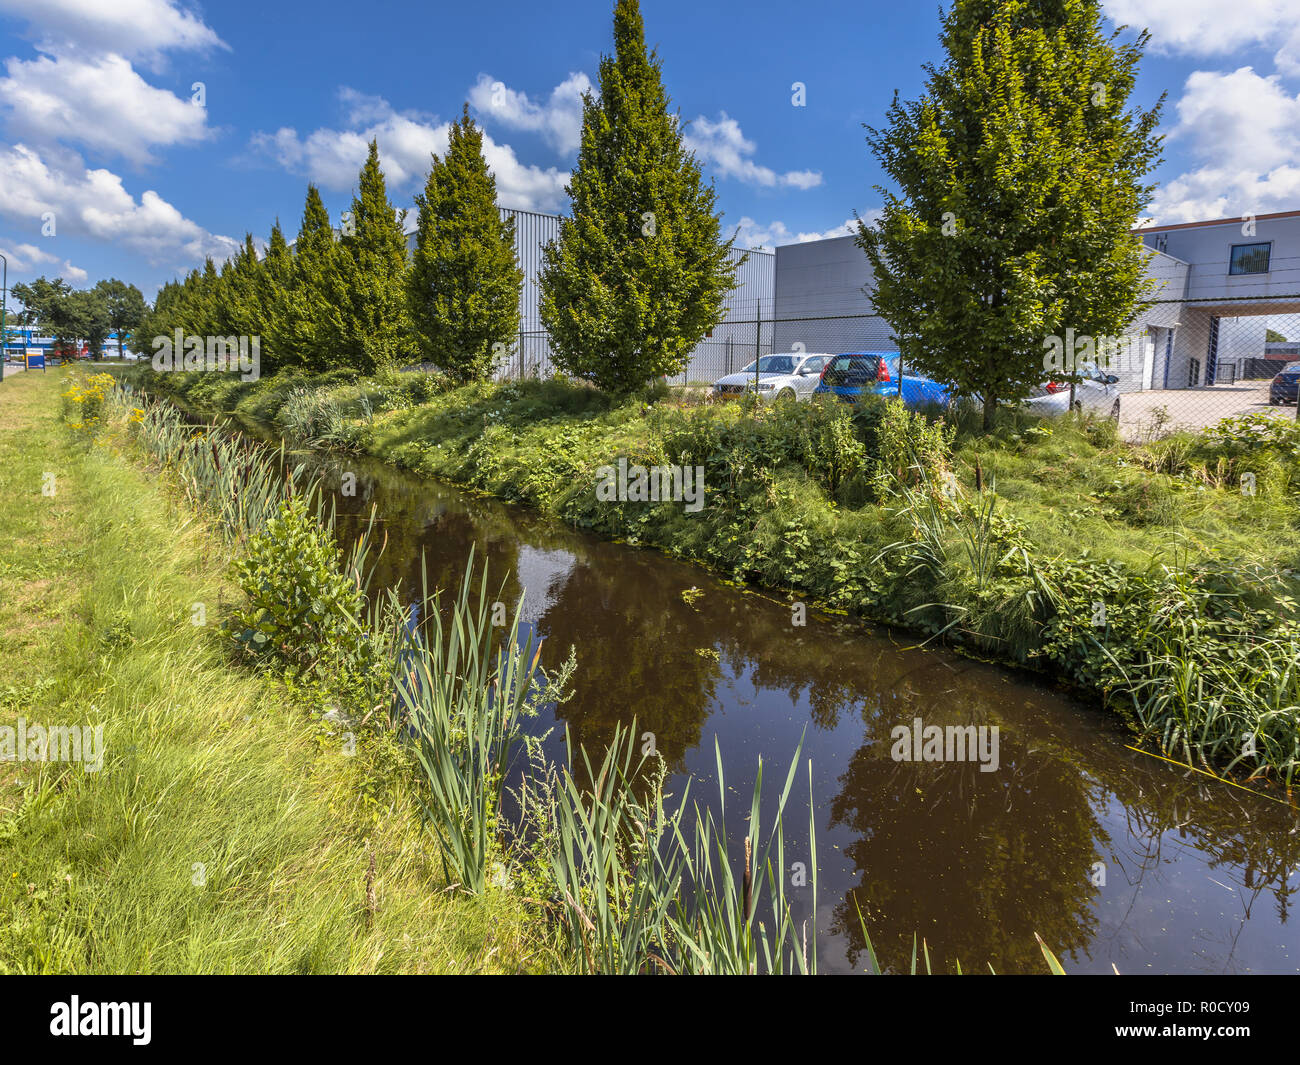 Eccessivo scarico acqua piovana canale di drenaggio in un olandese area industriale a Soest, Paesi Bassi Foto Stock